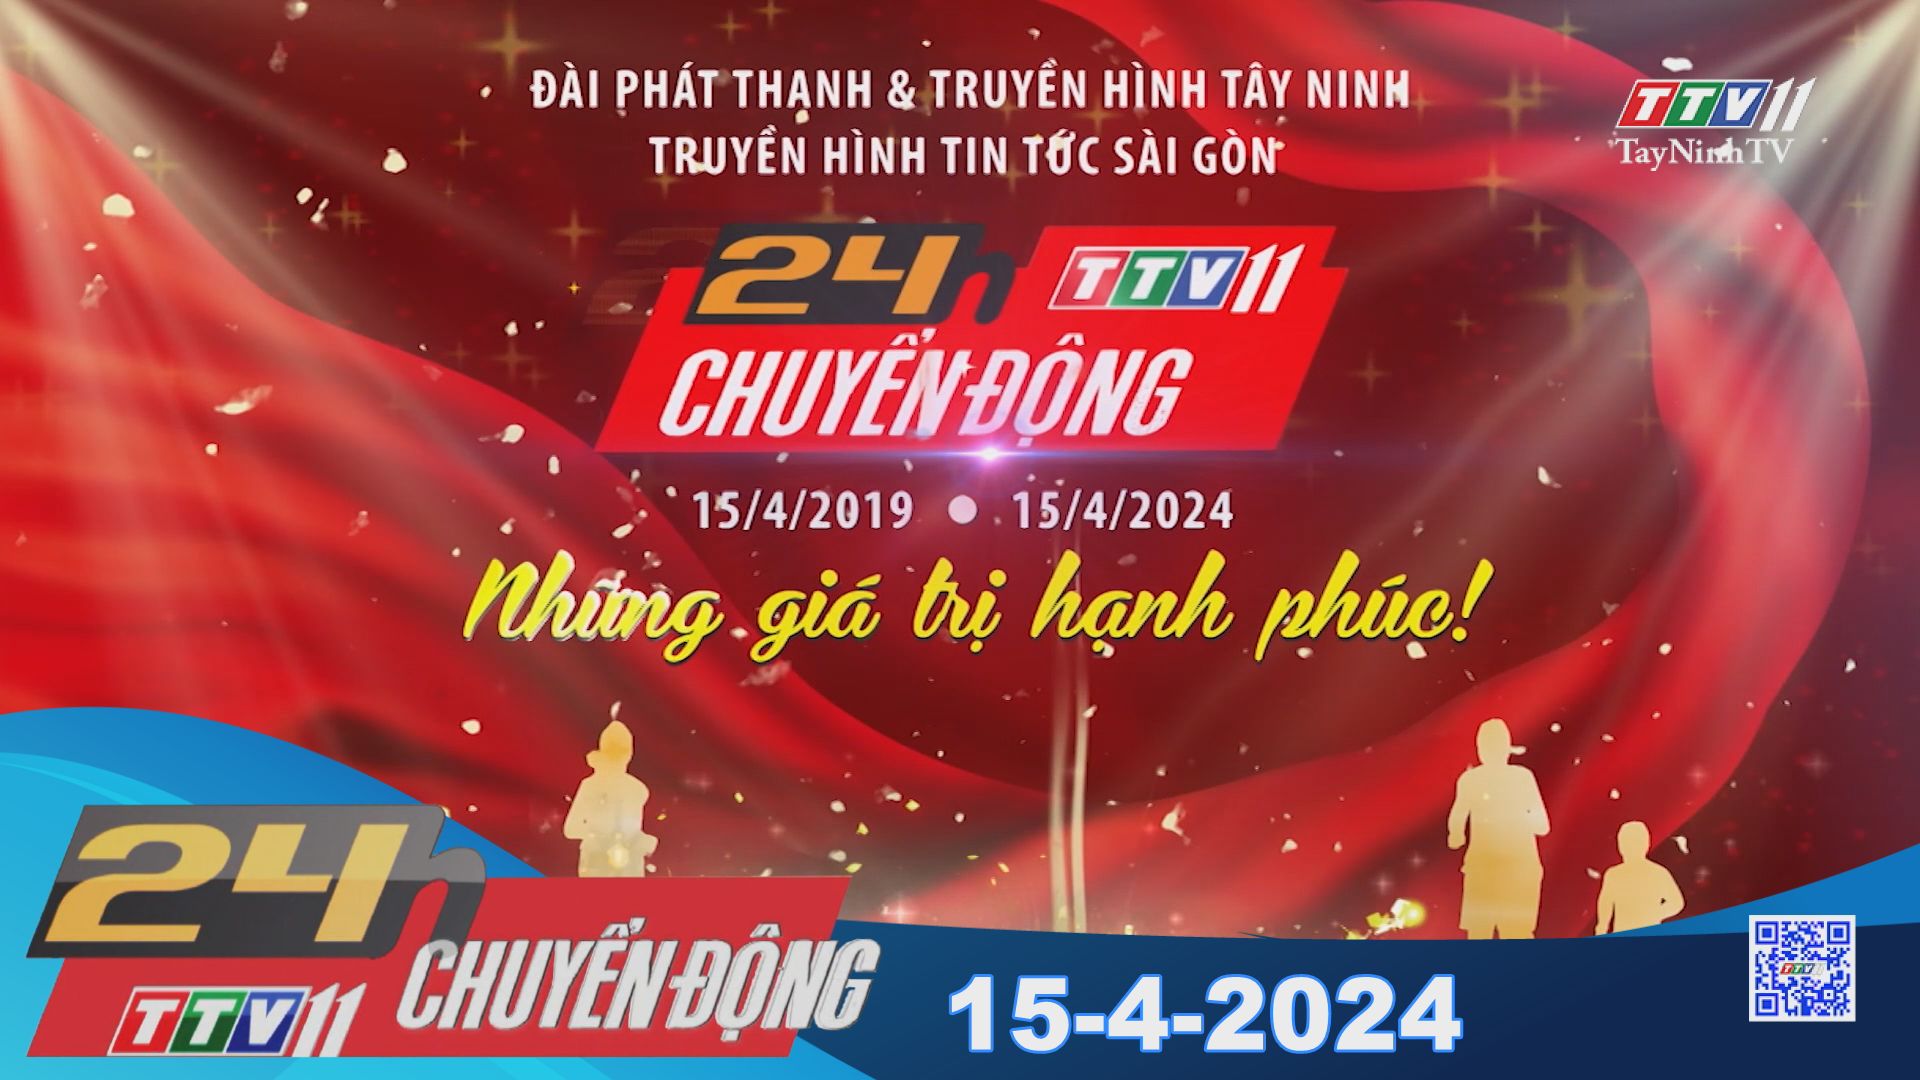 24h Chuyển động 15-4-2024 | TayNinhTV